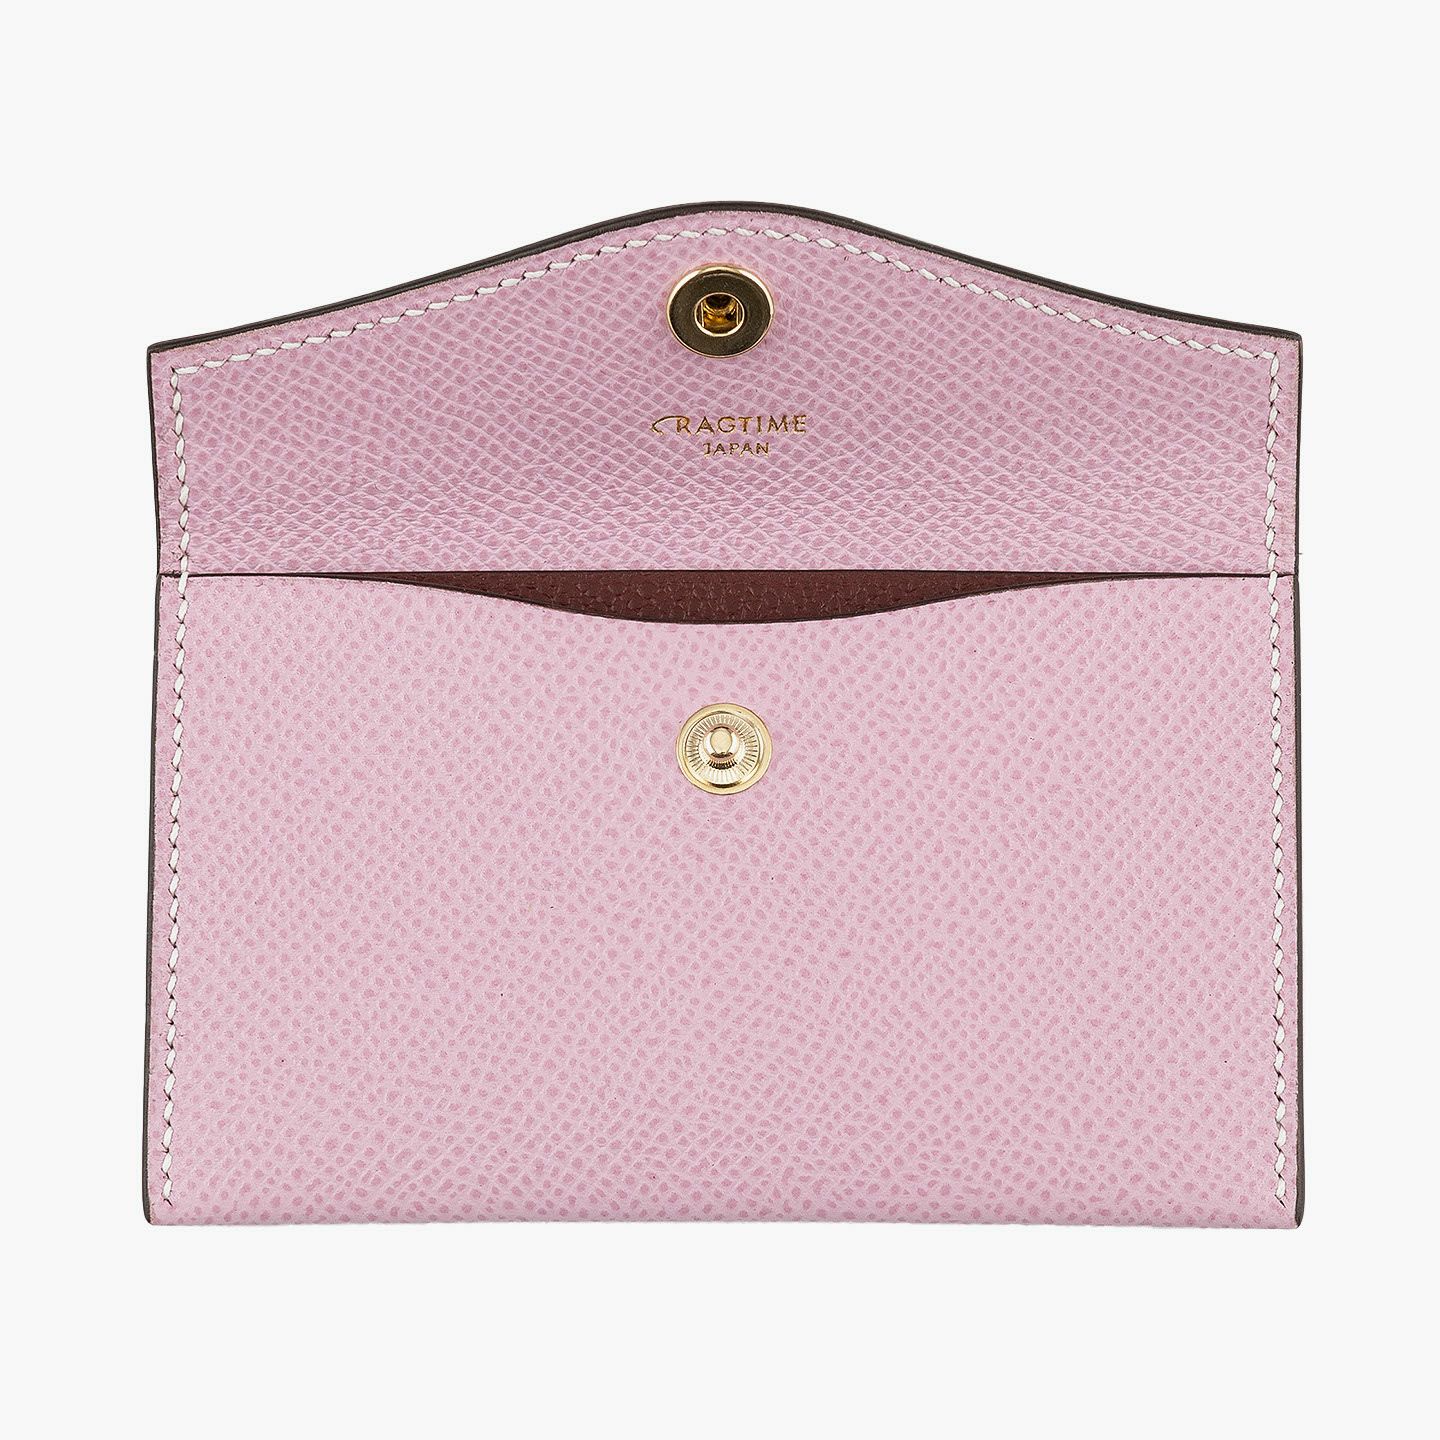 外装（ダービー）：Mauve Pink、内装装飾（ダービー）：Rouge Brique、糸色：White 、金具 & ロゴ箔押し：Gold